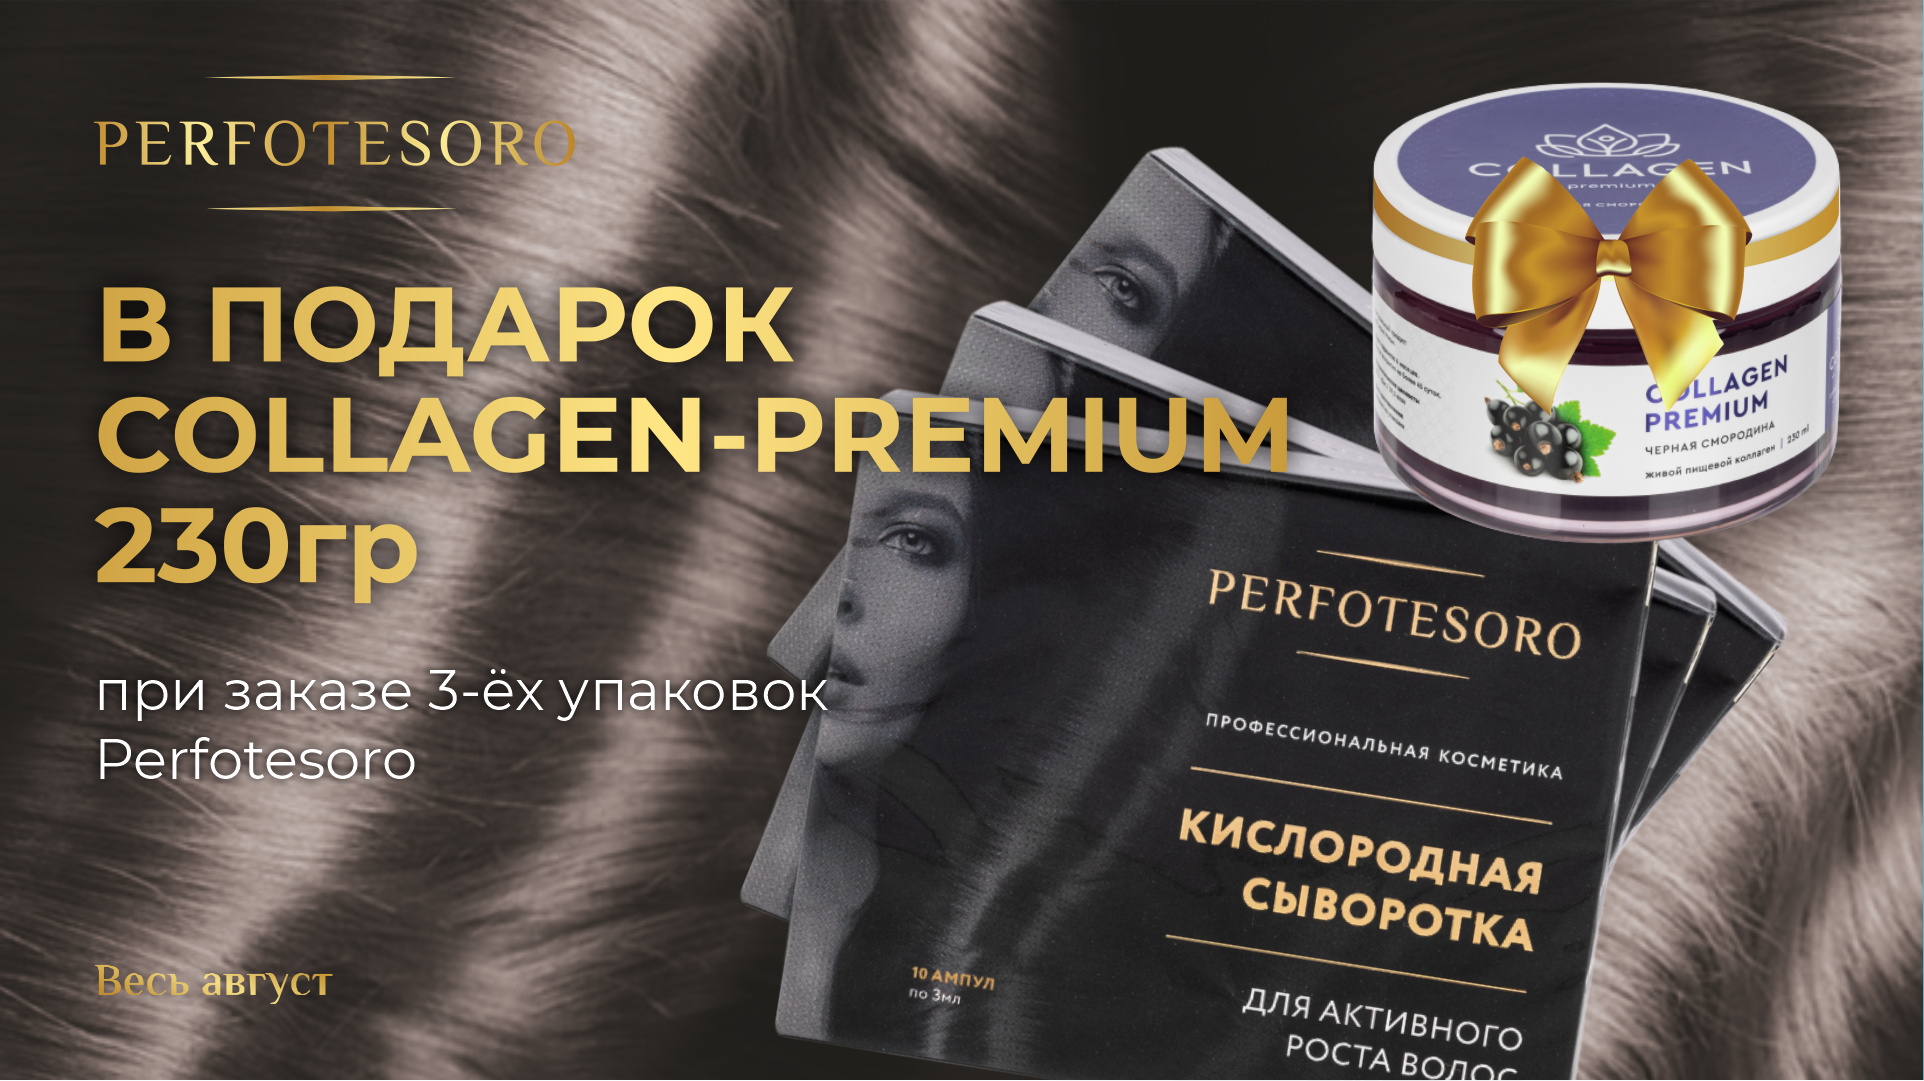 При заказе 3-ёх упаковок PERFOTESORO - Collagen-Premium 230 гр. в подарок